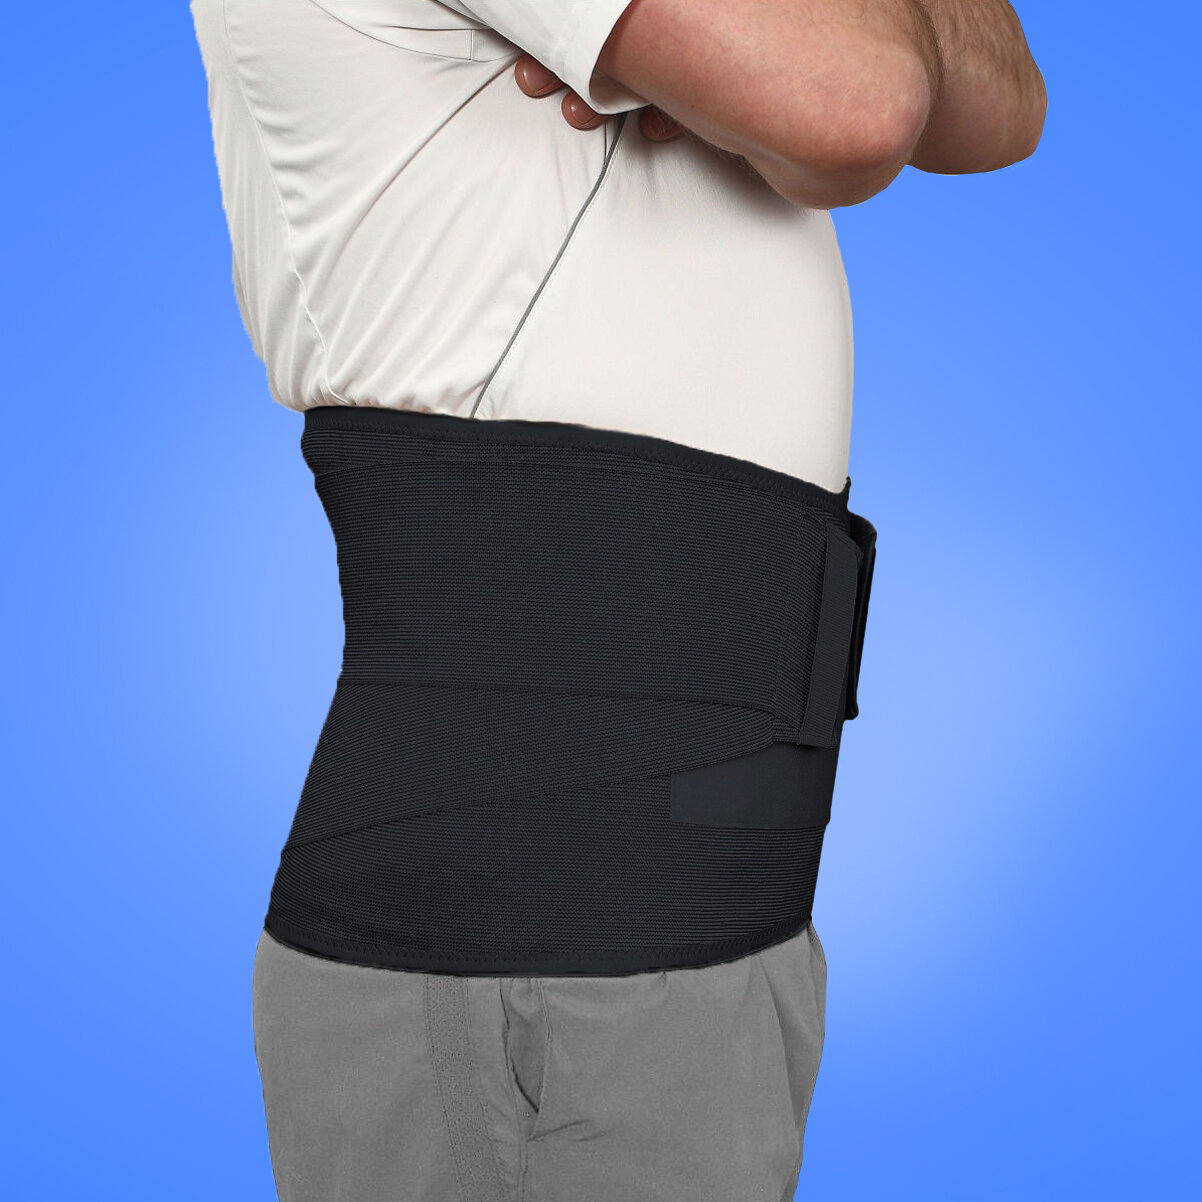 Бандаж брюшной поддерживающий усиленный / Пояс для спины / Корсет ортопедический поясничный. Черный, 2 размер.